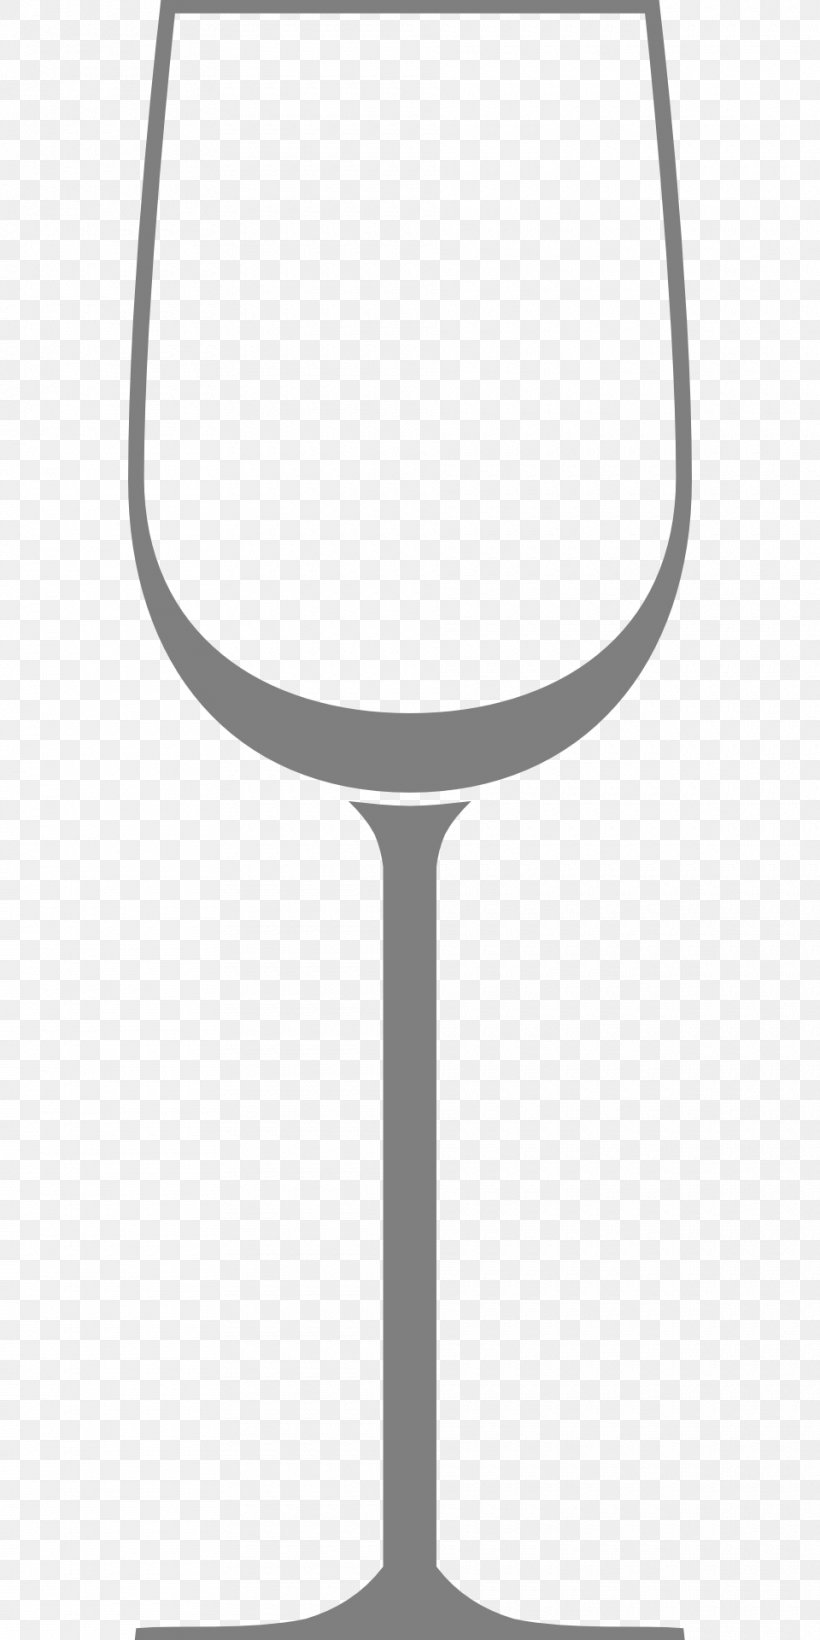 Wine Glass Cabernet Sauvignon Wine Glass Stemware, PNG, 960x1920px, Wine, Cabernet Sauvignon, Champagne Glass, Champagne Stemware, Crown Jewel Importers Inc Download Free